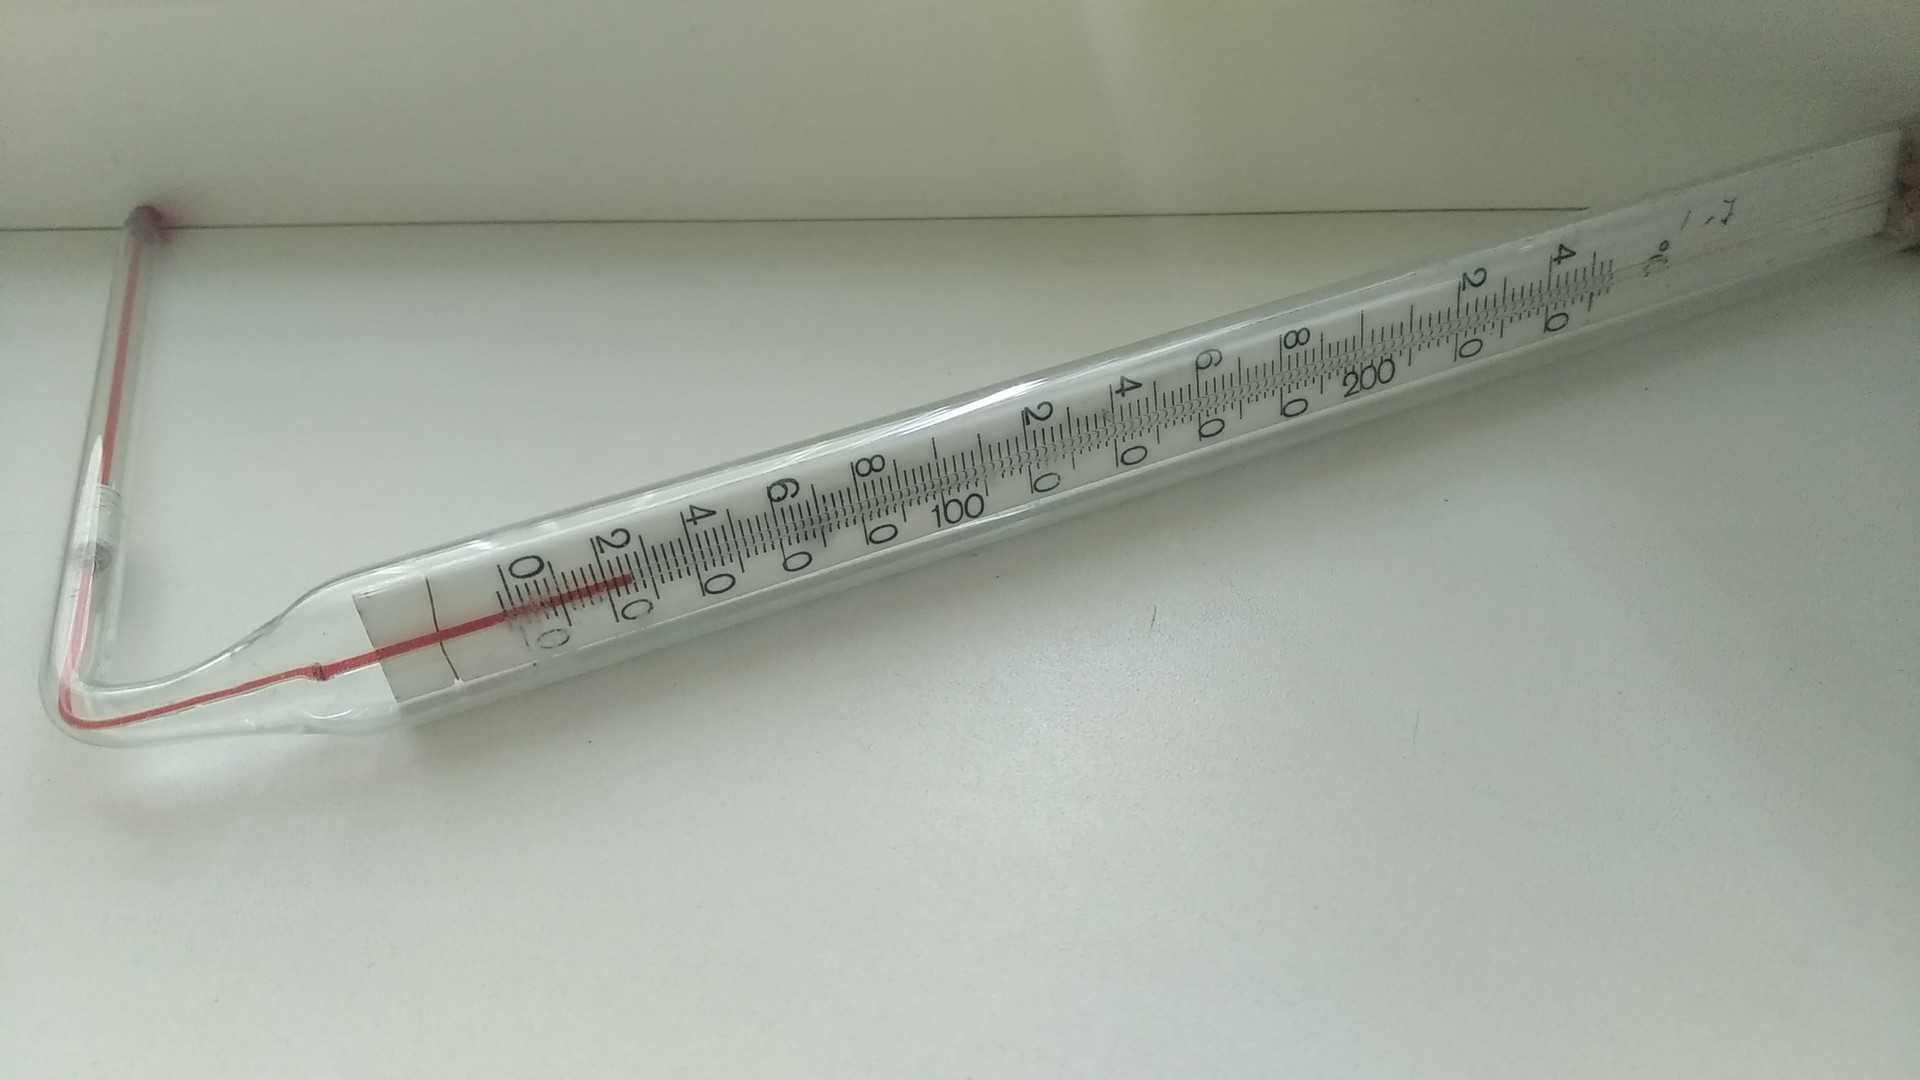 Термометр от 0 до 250 градусов Цельсия.